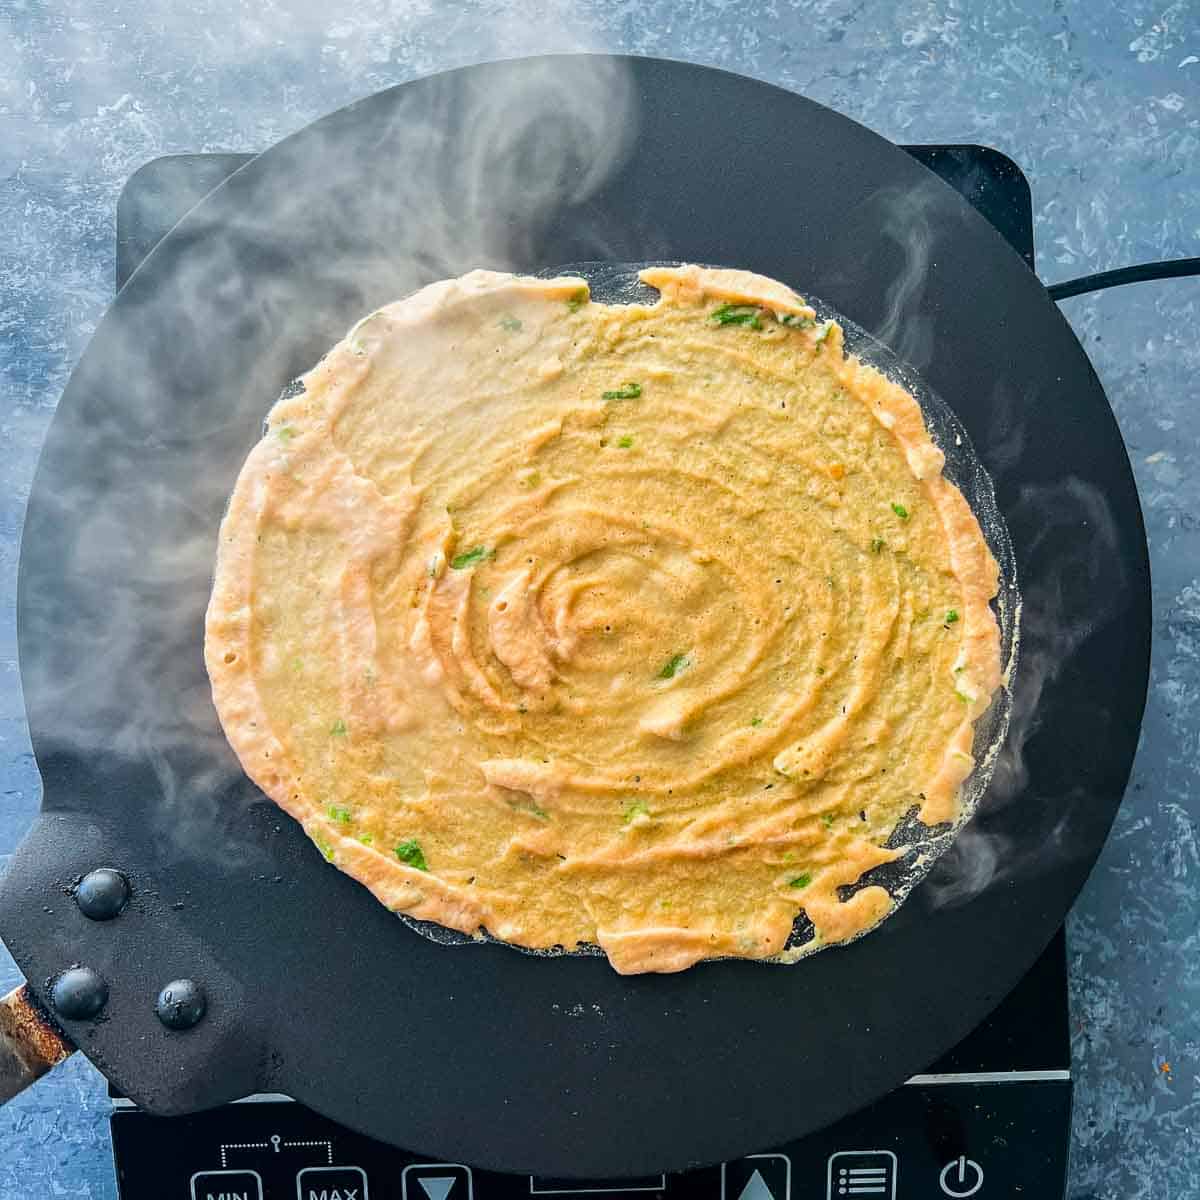 Pancake batter poured on hot tawa/griddle.